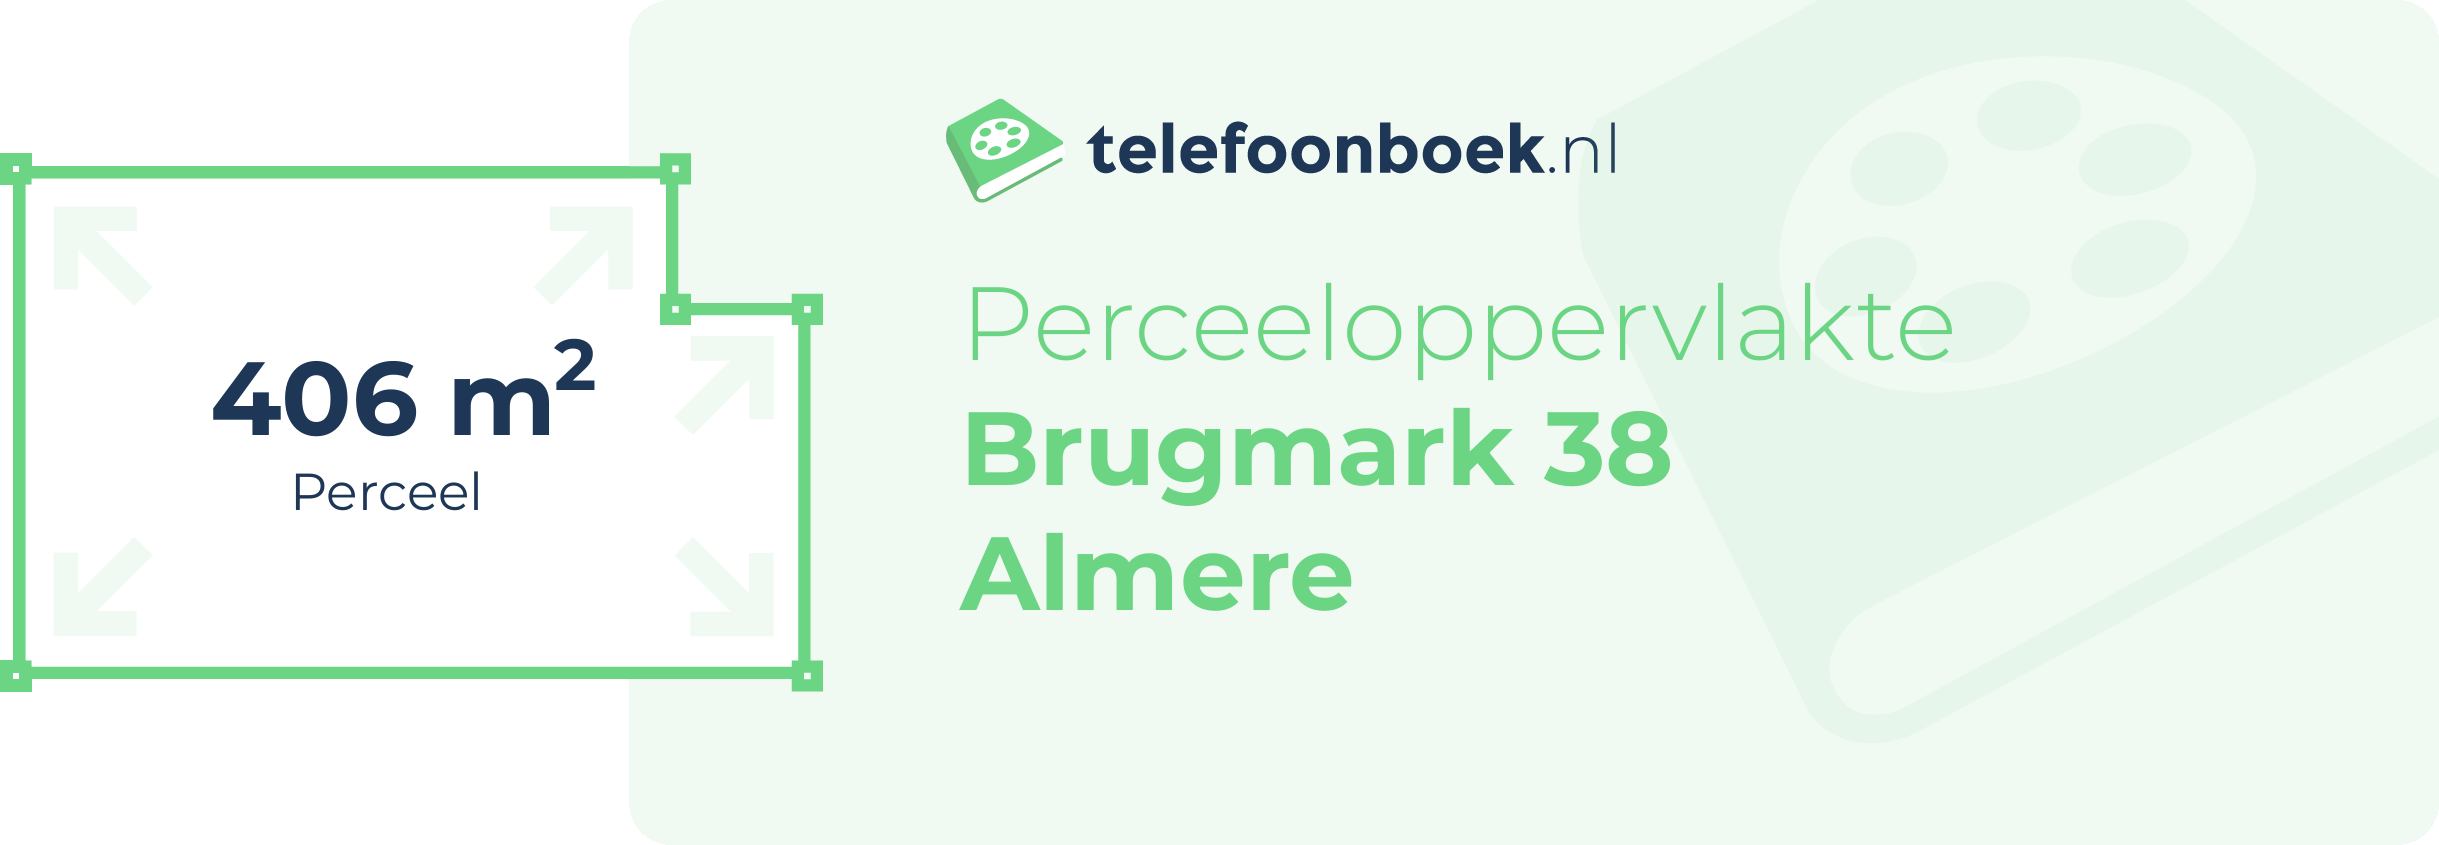 Perceeloppervlakte Brugmark 38 Almere